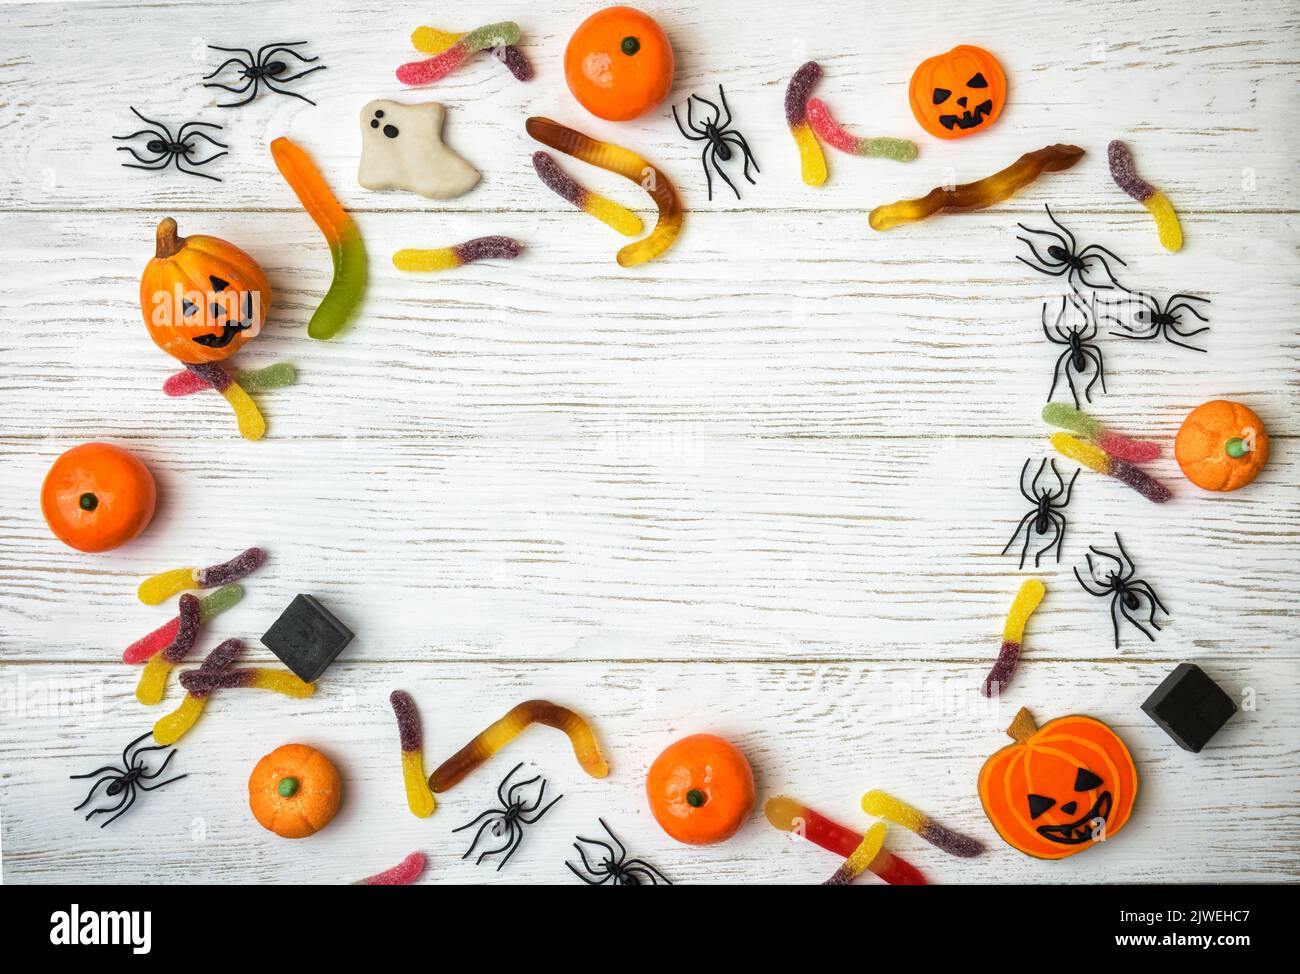 Bonbons et décorations d'Halloween sur fond de bois blanc. Vue de dessus du cadre d'Halloween avec biscuits, fantôme, araignées et bonbons sur table en bois, plat la Banque D'Images